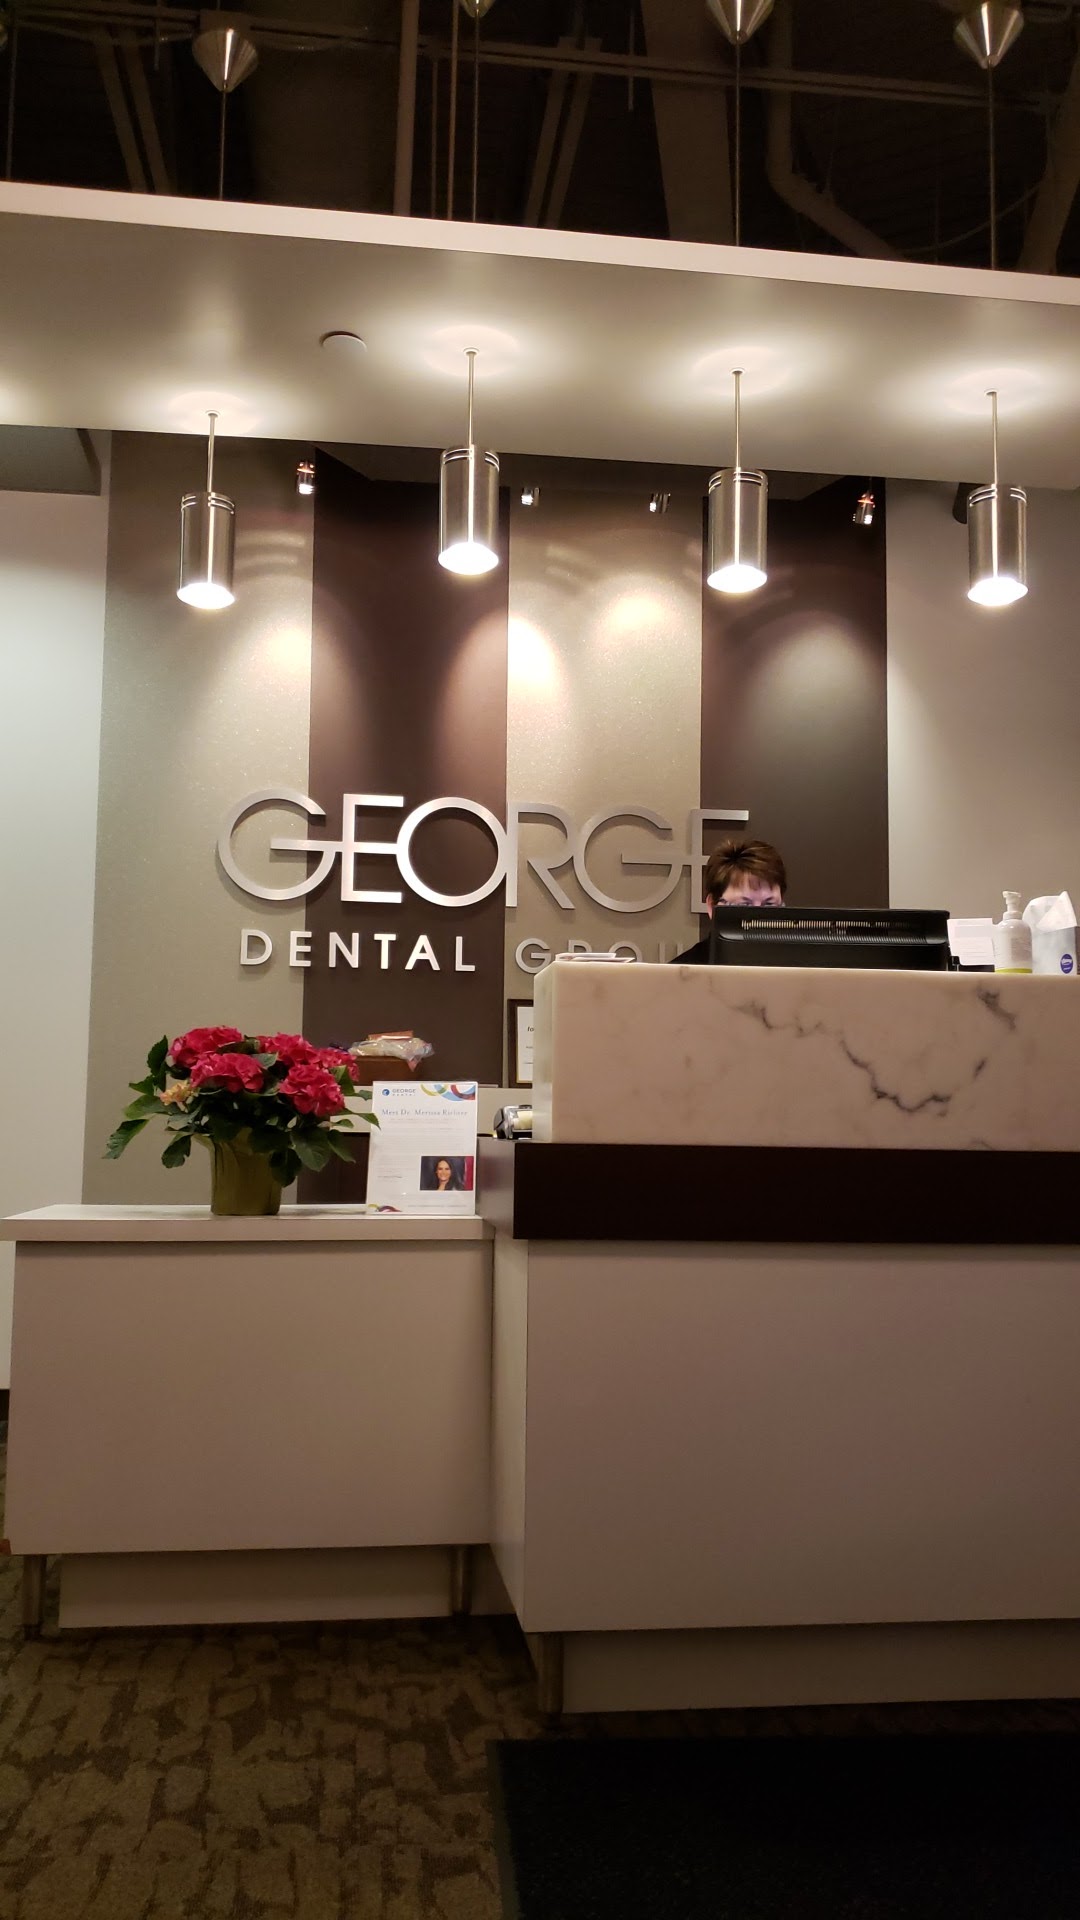 George Dental